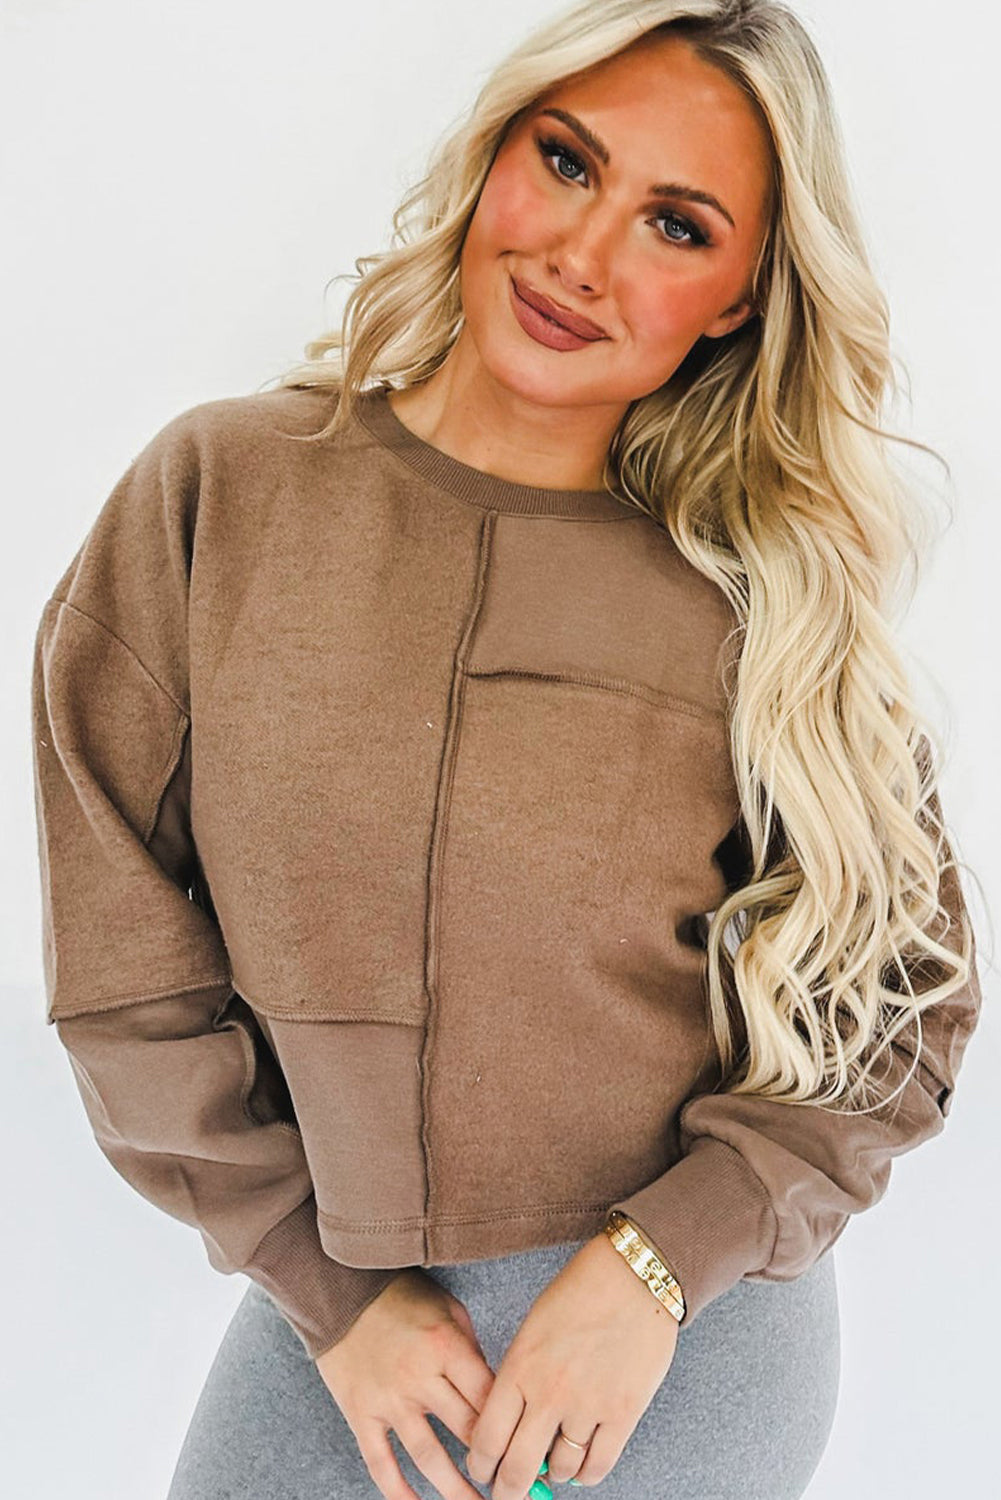 Enobarvni pulover z izpostavljenimi šivi v kavni barvi